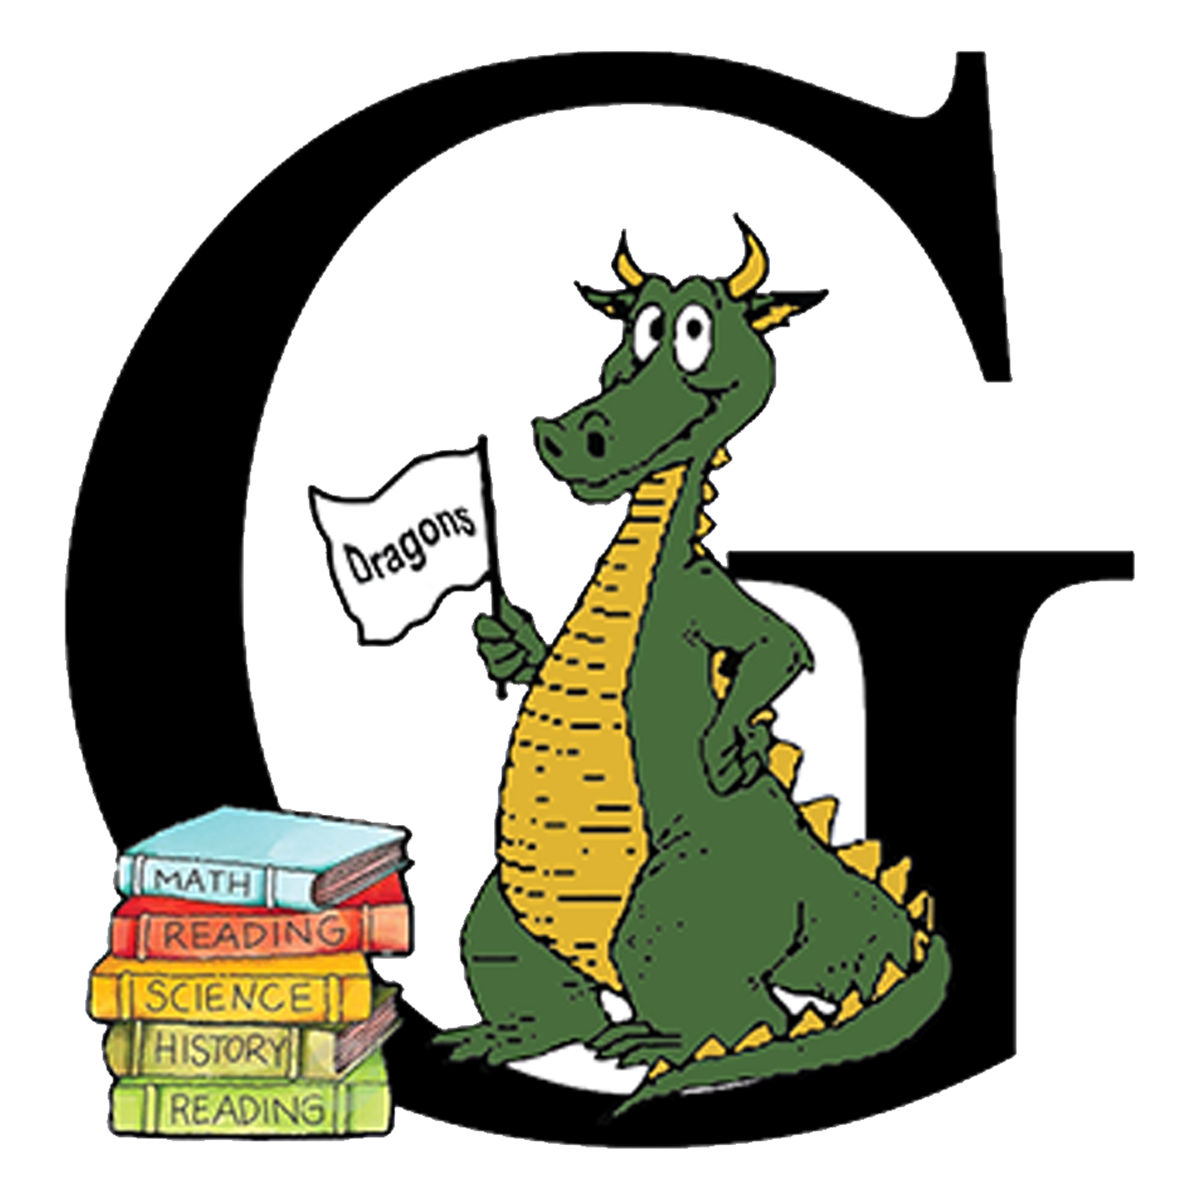 greendale elementary school logo